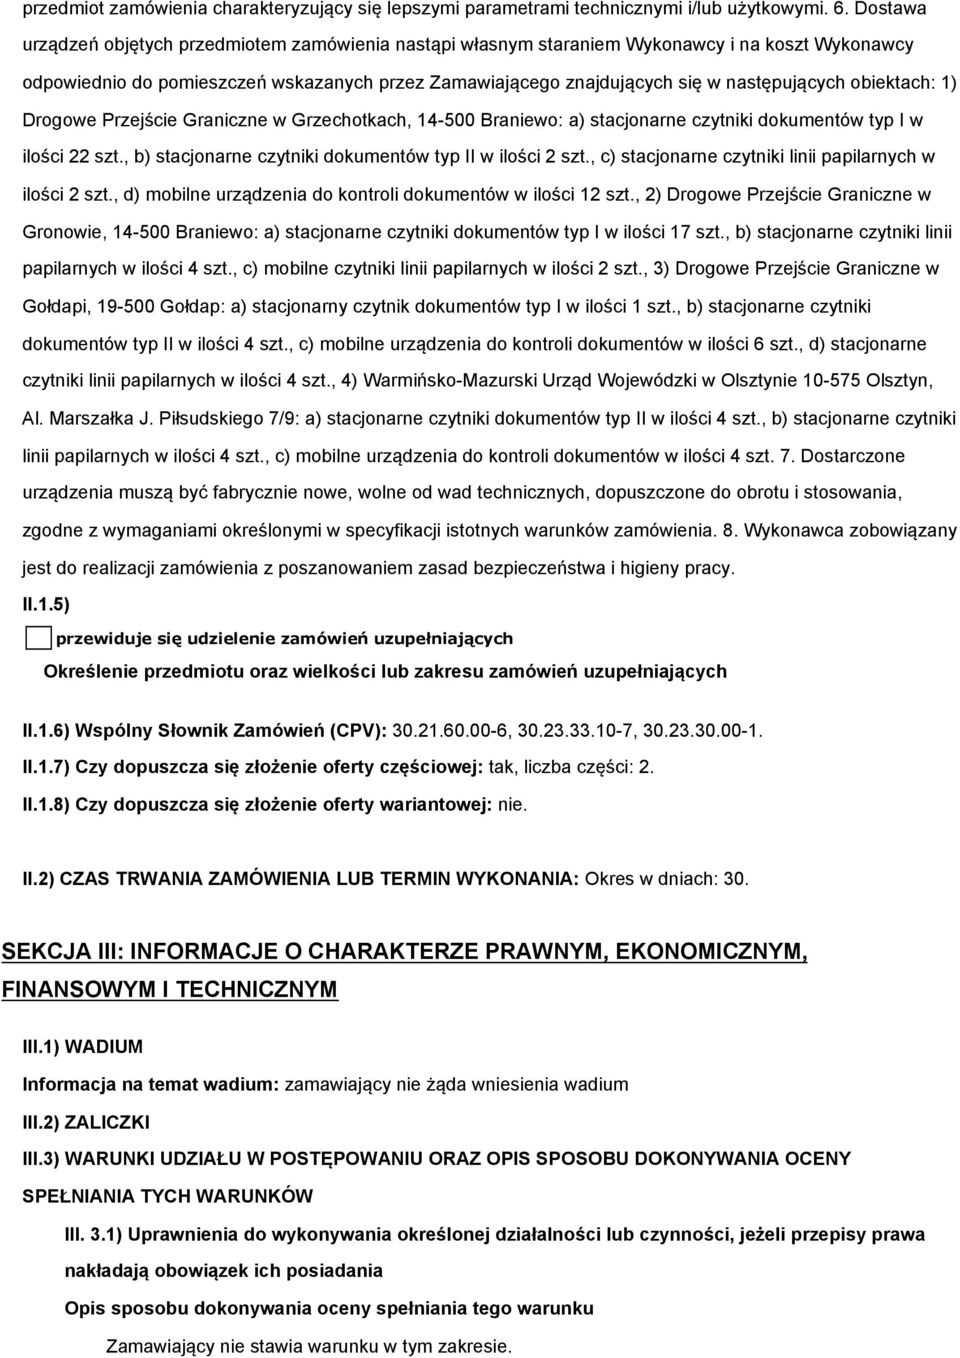 obiektach: 1) Drogowe Przejście Graniczne w Grzechotkach, 14-500 Braniewo: a) stacjonarne czytniki dokumentów typ I w ilości 22 szt., b) stacjonarne czytniki dokumentów typ II w ilości 2 szt.